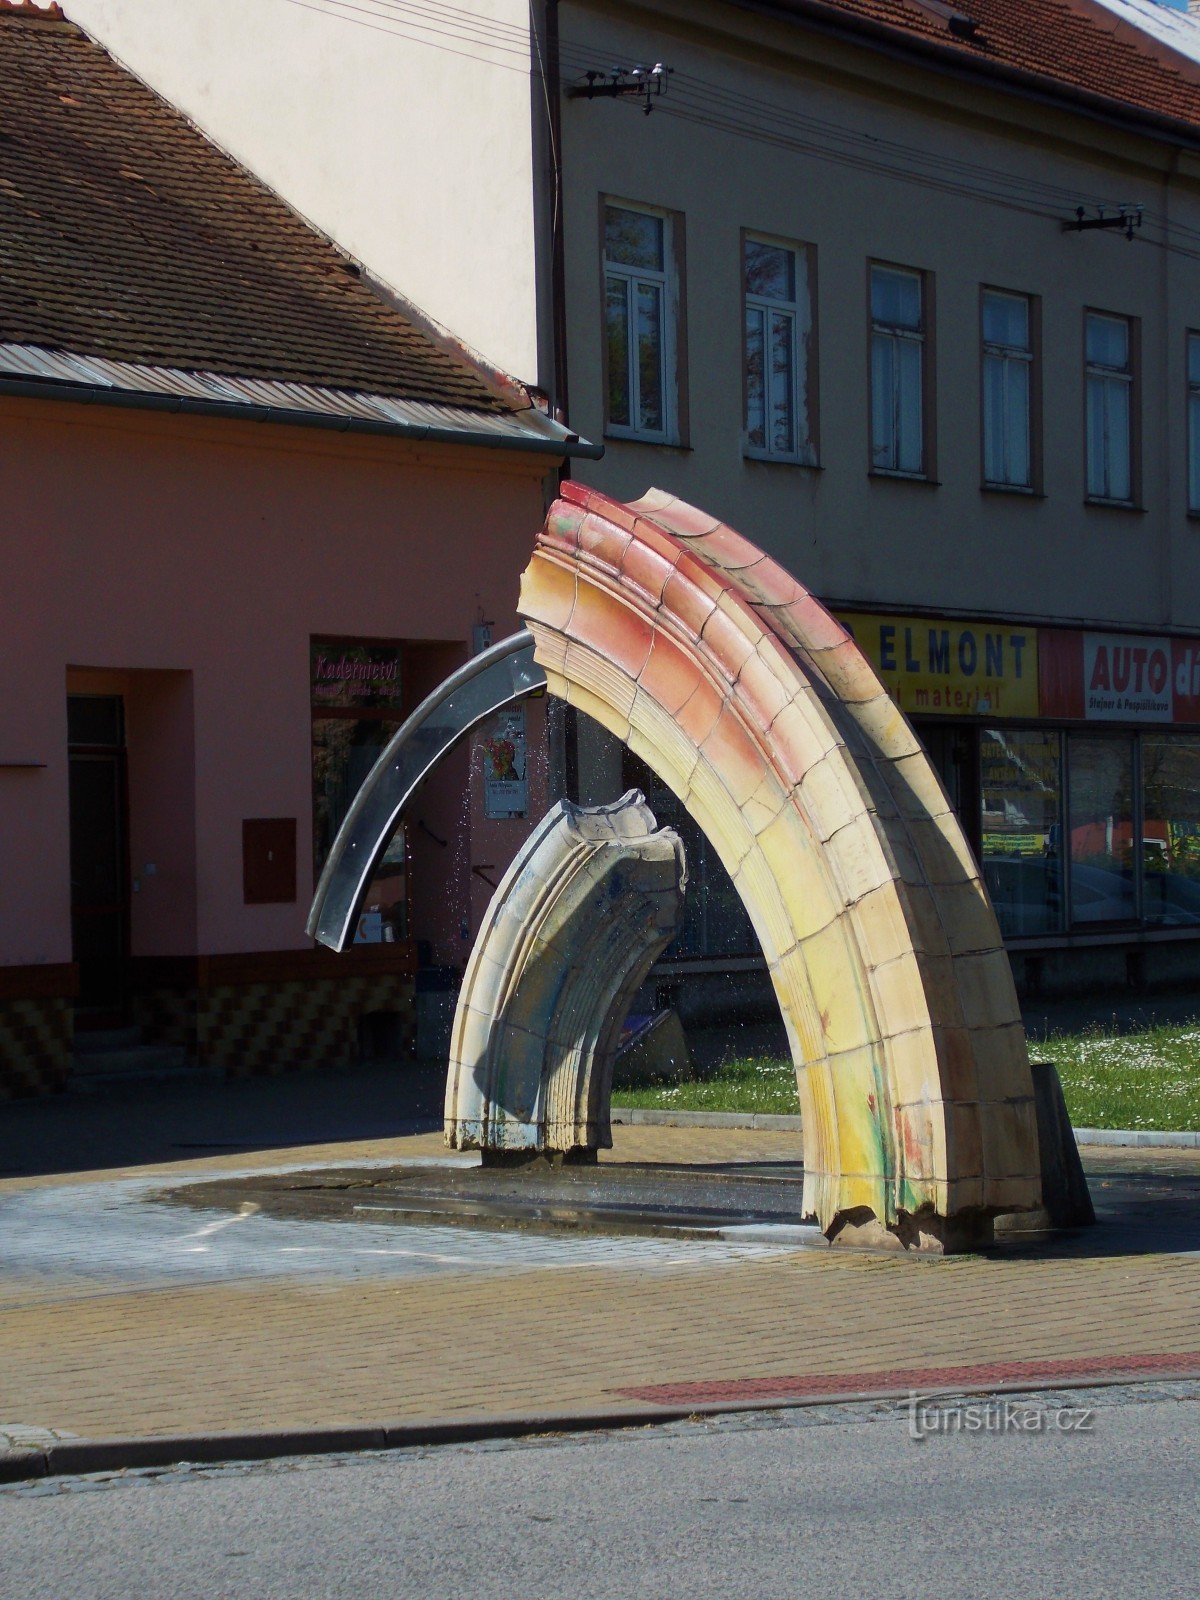 Twee fonteinen - decoraties van de stad in Bystřice pod Hostýnem